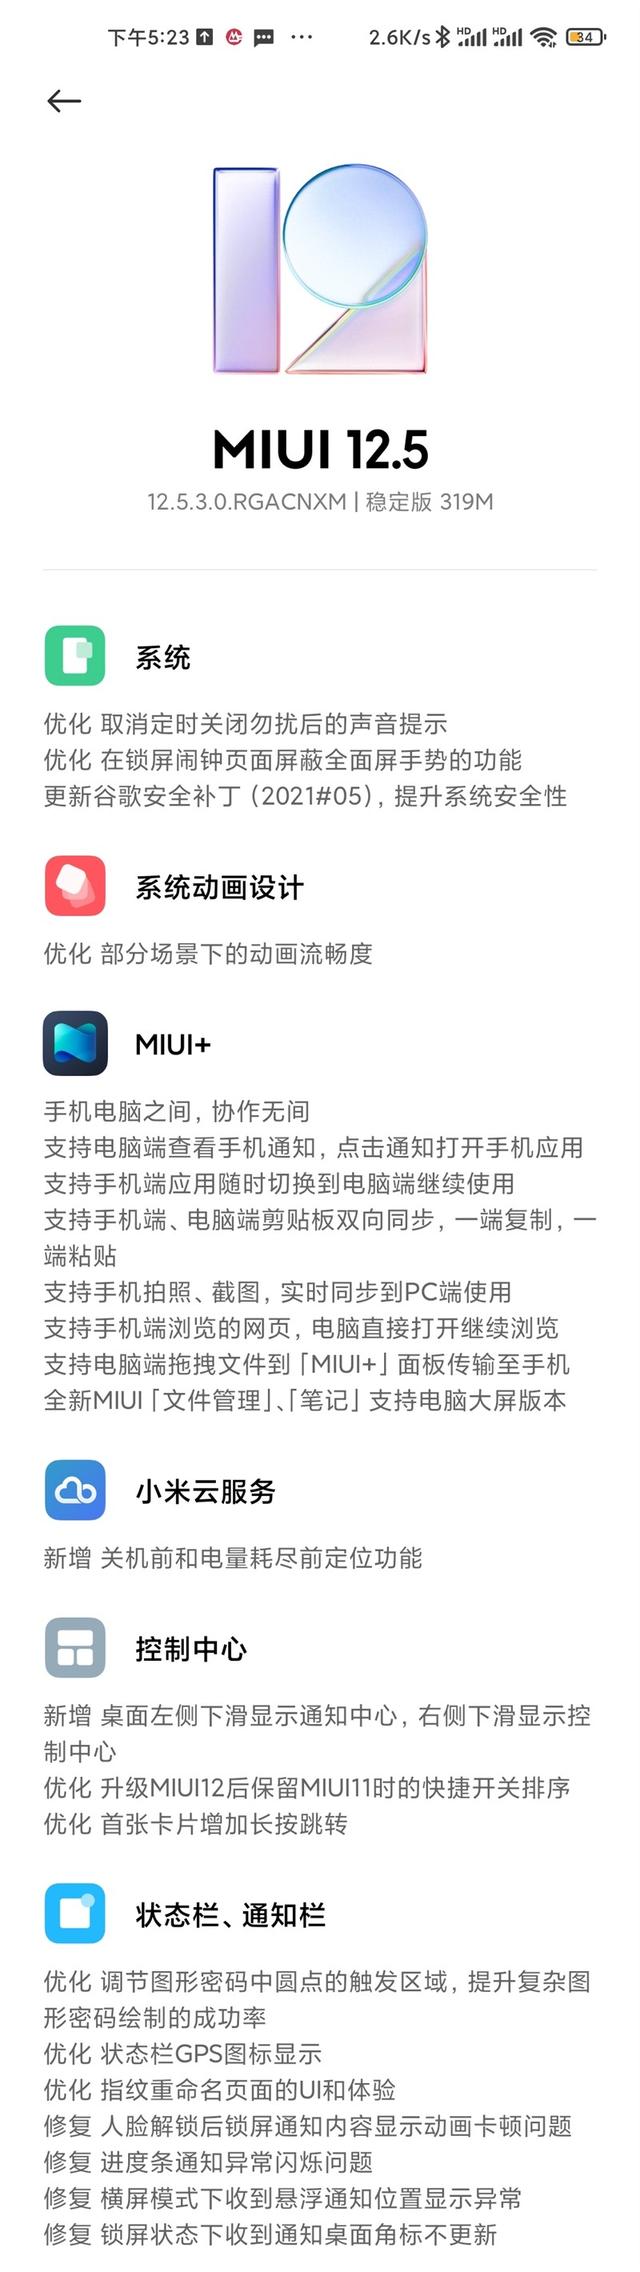 小米10S新增 MIUI+ 互联功能